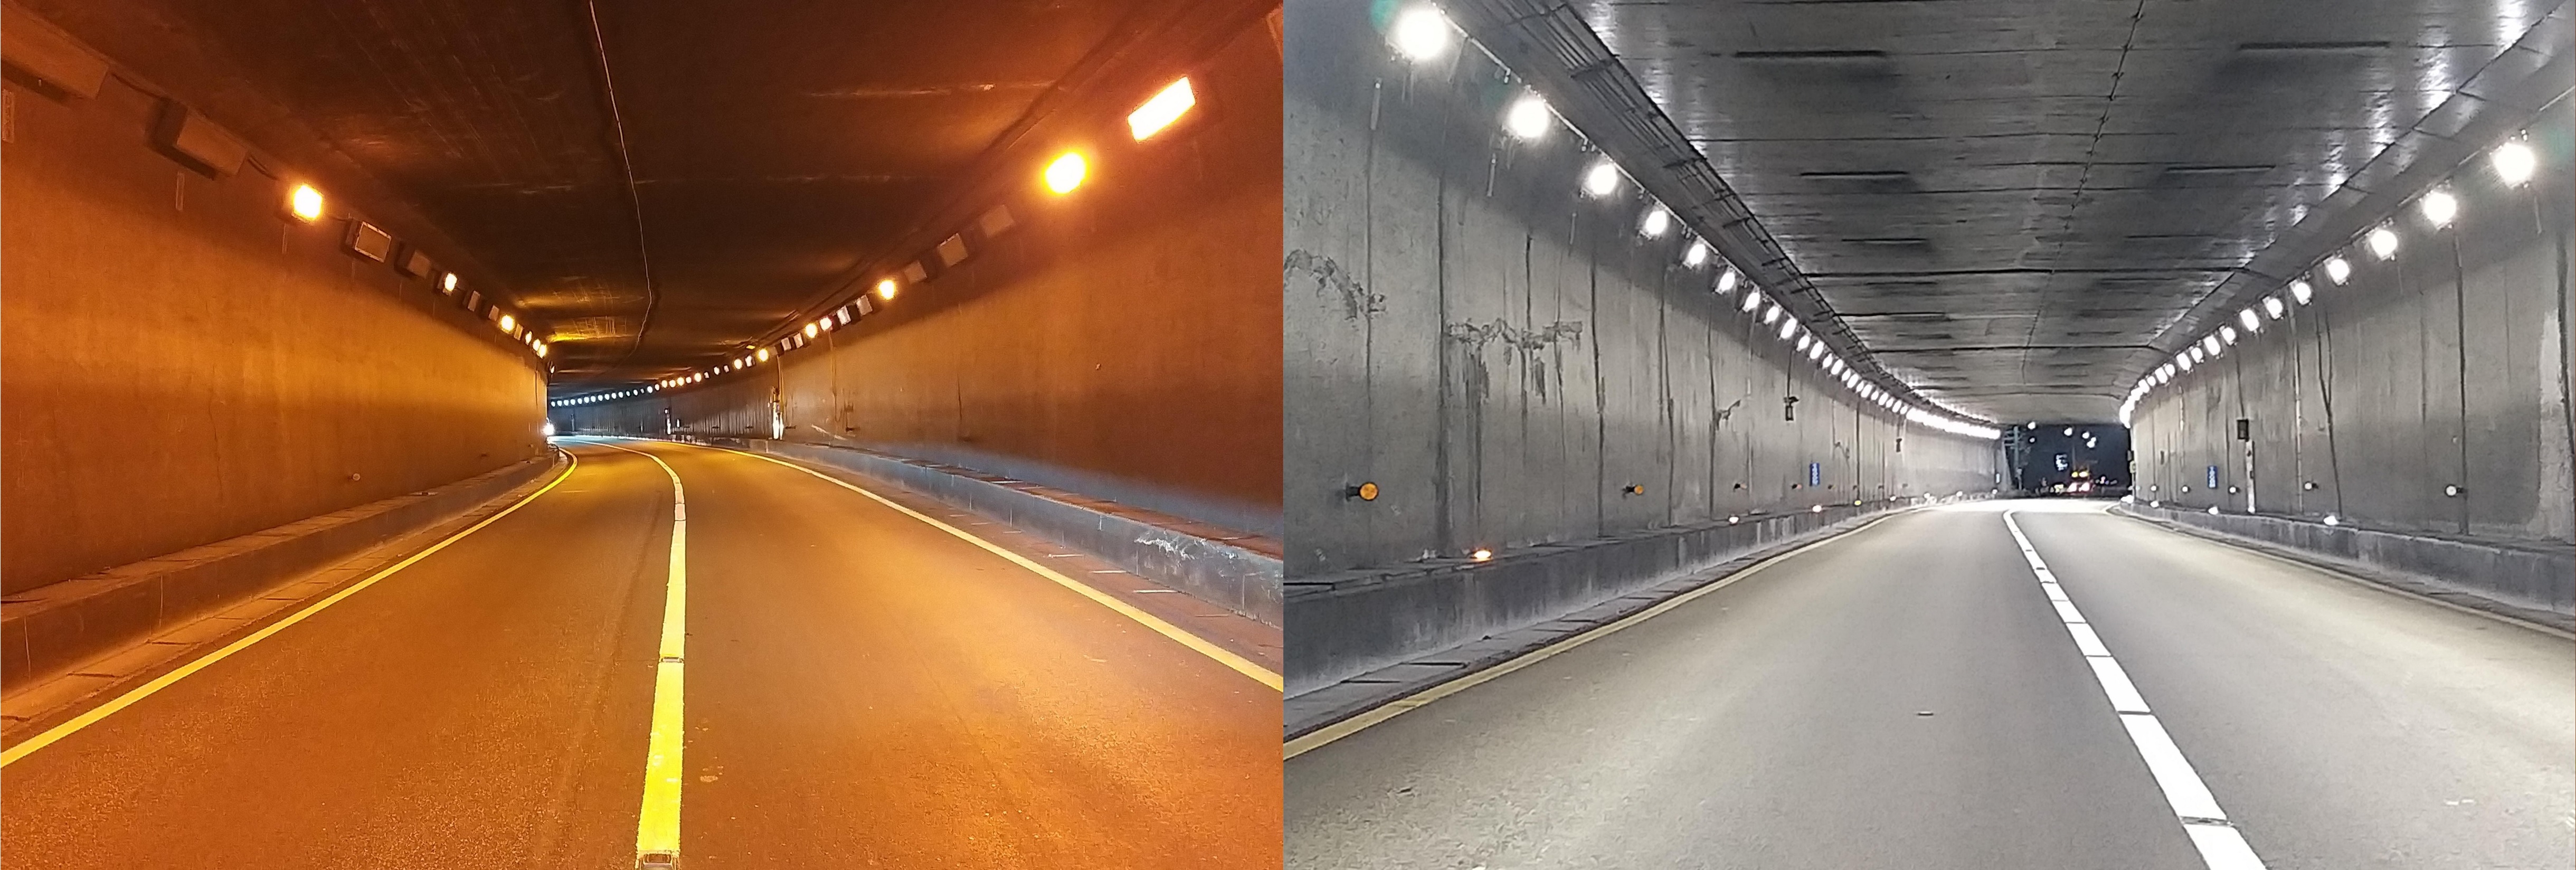 구덕터널 LED등기구 교체 전후사진